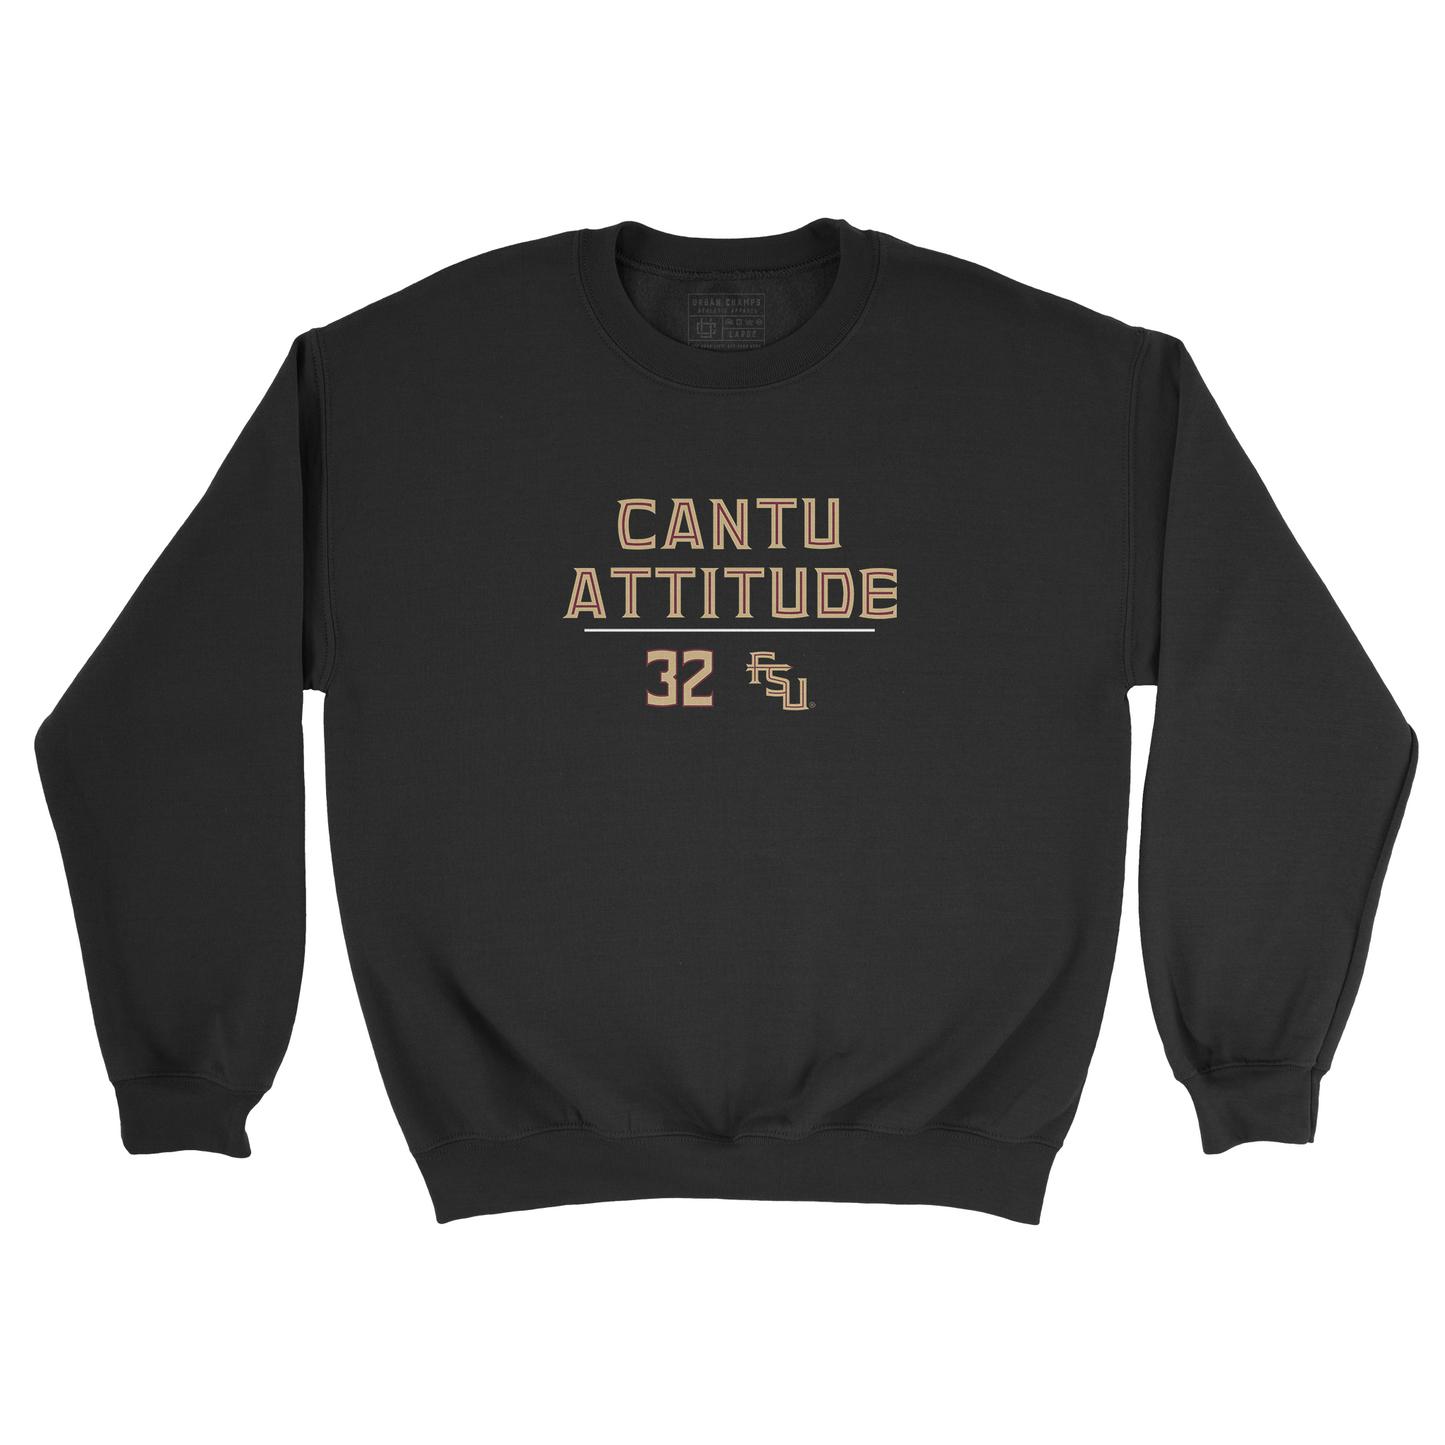 EXCLUSIVE RELEASE: Daniel Cantu "Cantu Attitude" Black Crew